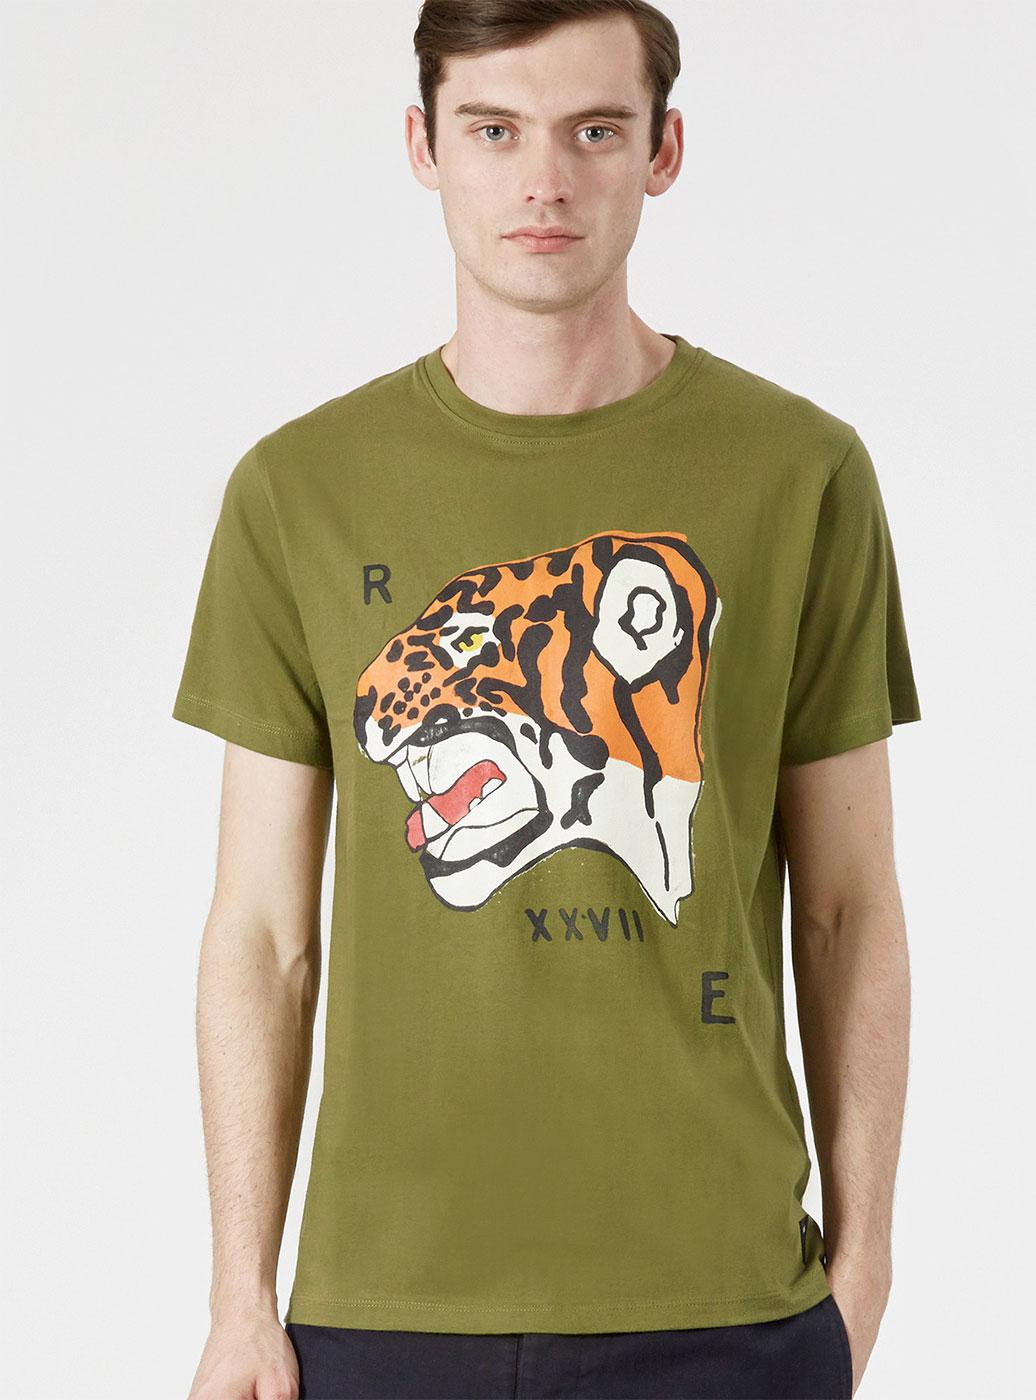 REALM & EMPIRE Retro Tiger Nose Print Tee 